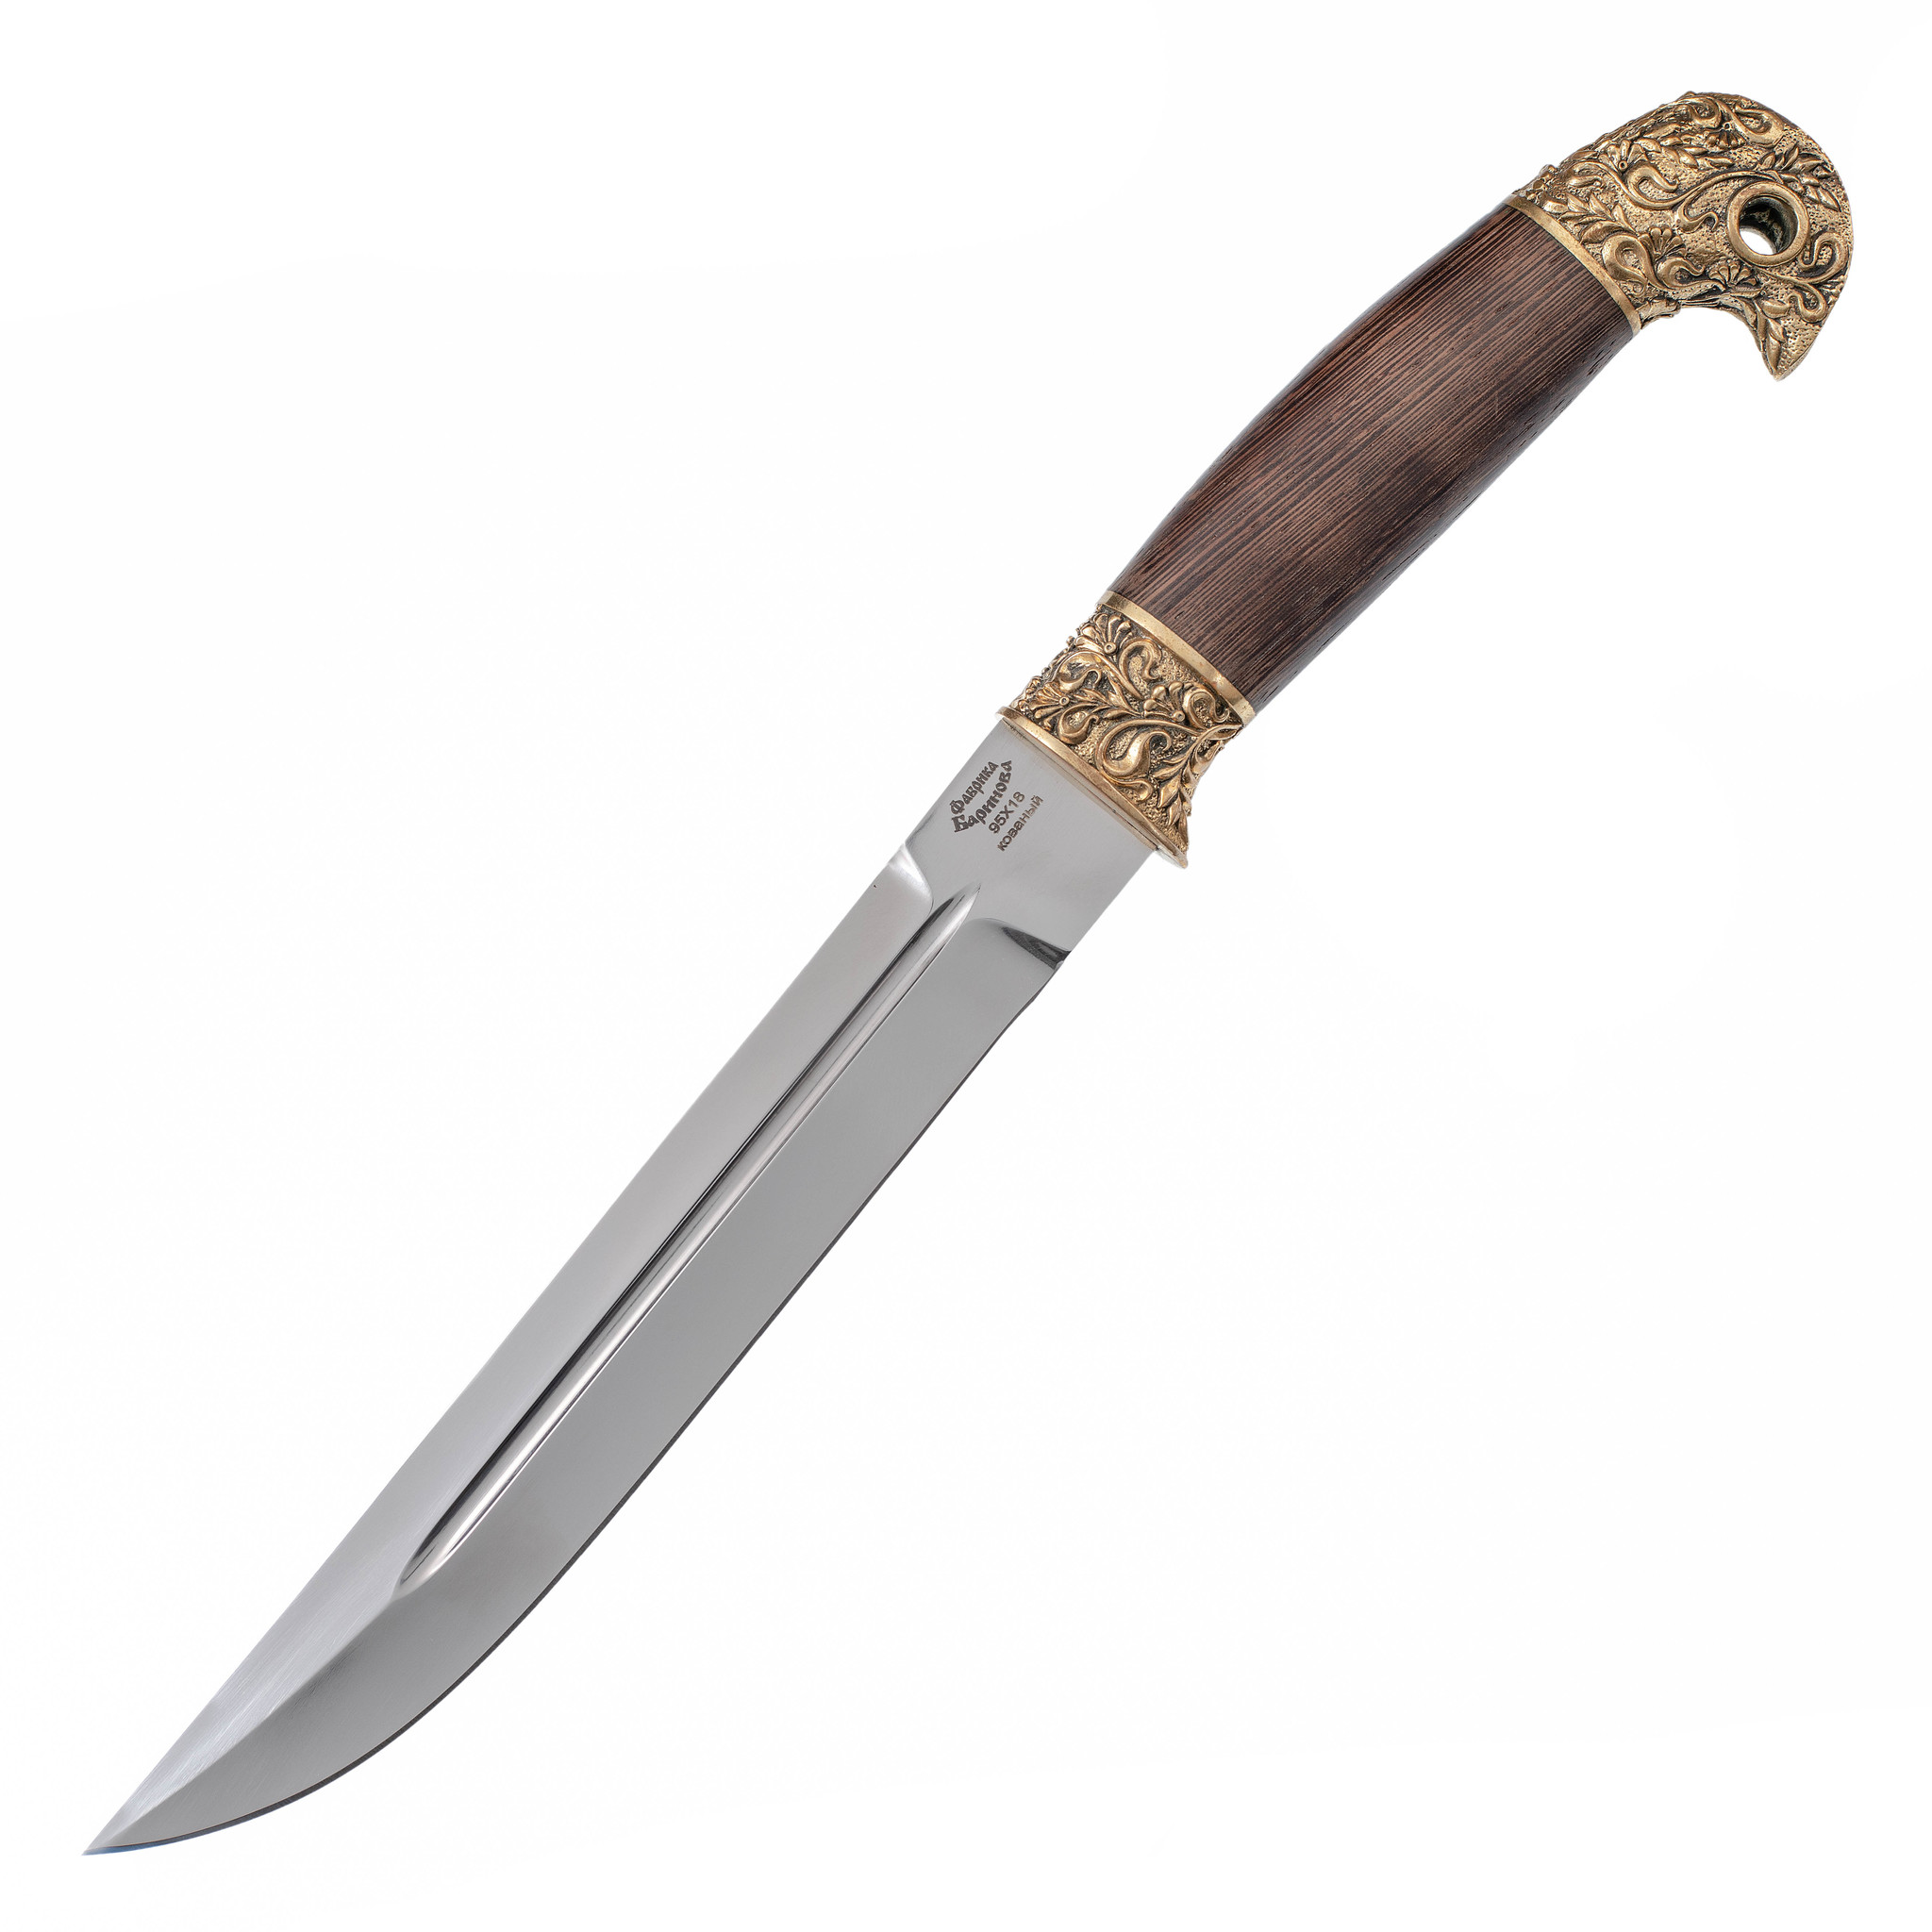 Нож Пластунский Ш-2, сталь 95х18, художественное литье, рукоять венге нож туристический аир засапожный 1 сталь 95х18 рукоять кожа